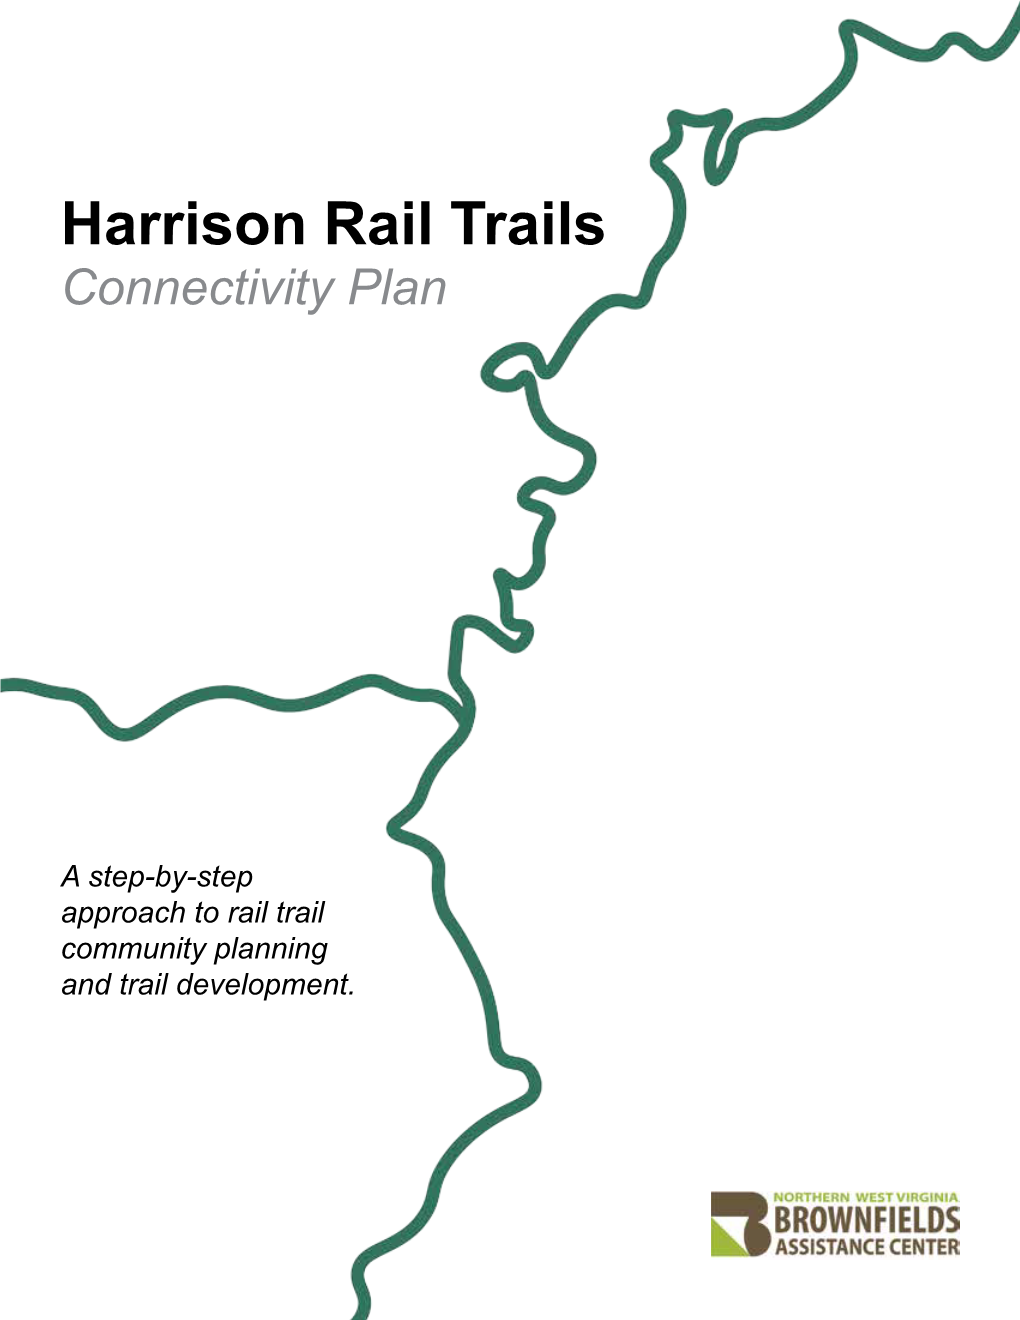 Harrison Rail Trails Connectivity Plan